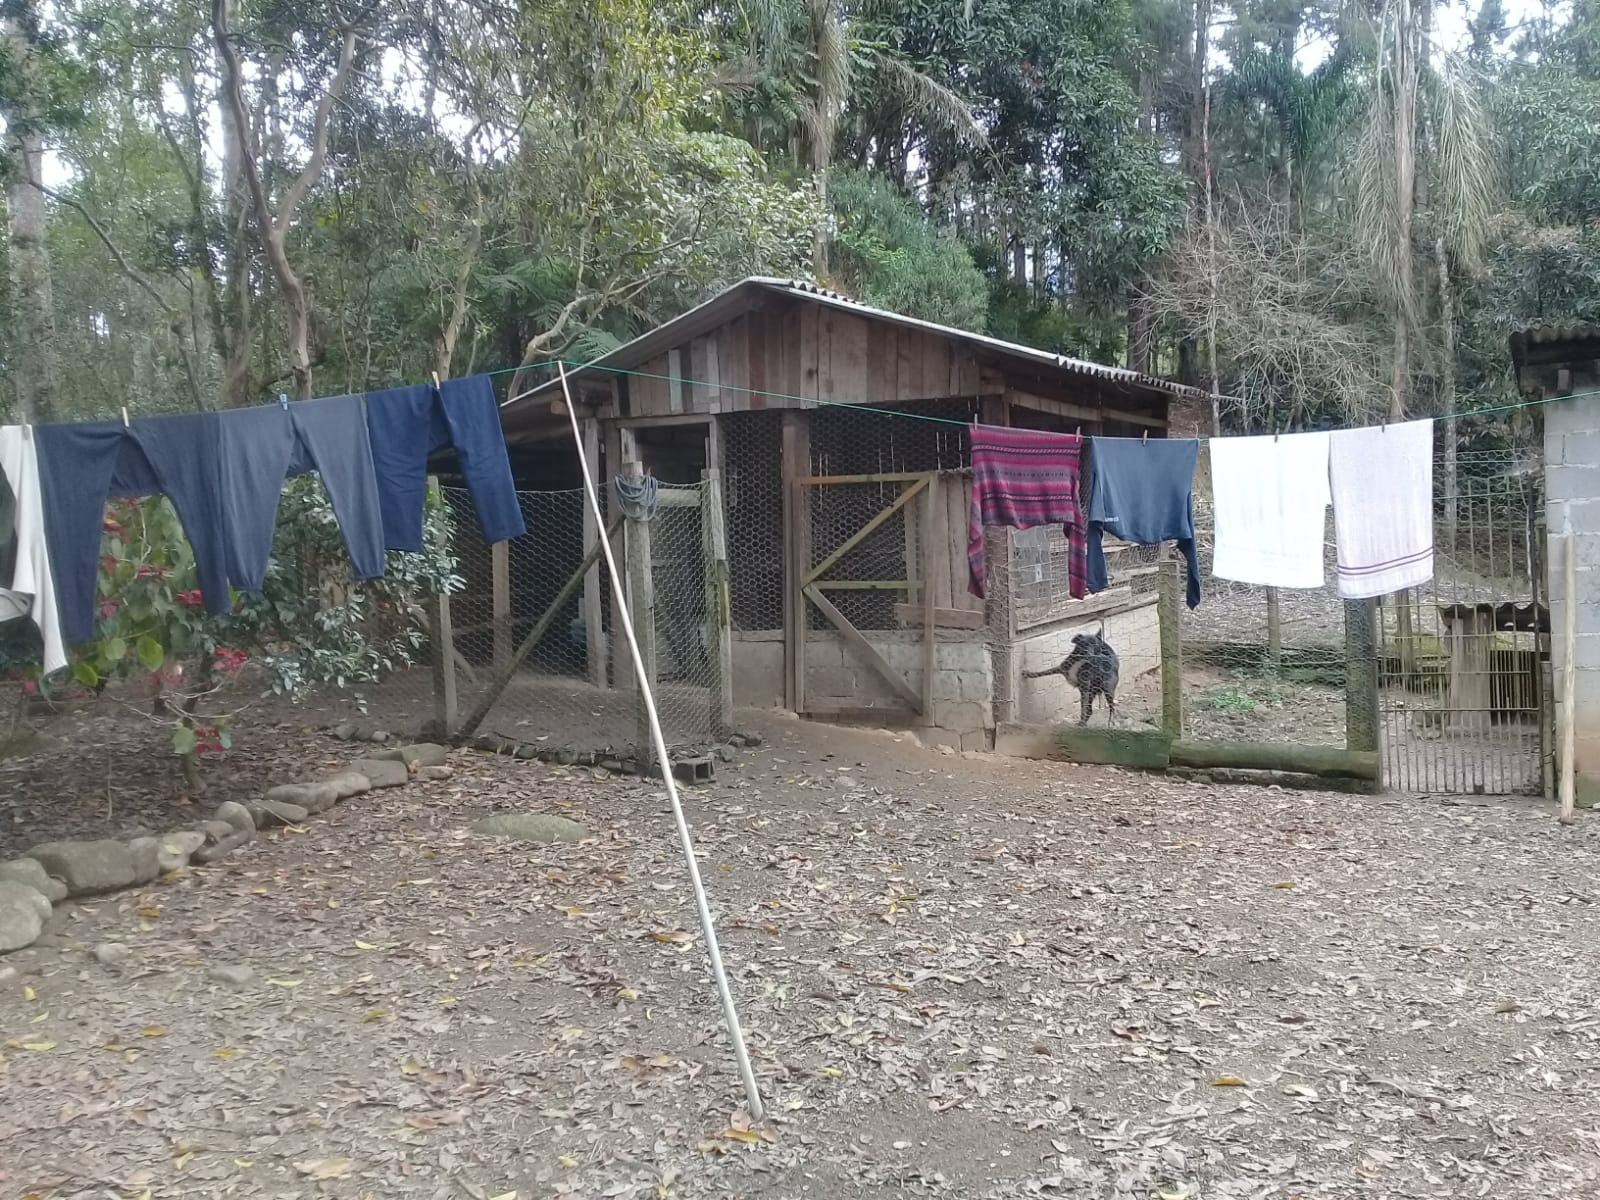 Sítio de 24 ha em São José dos Campos, SP